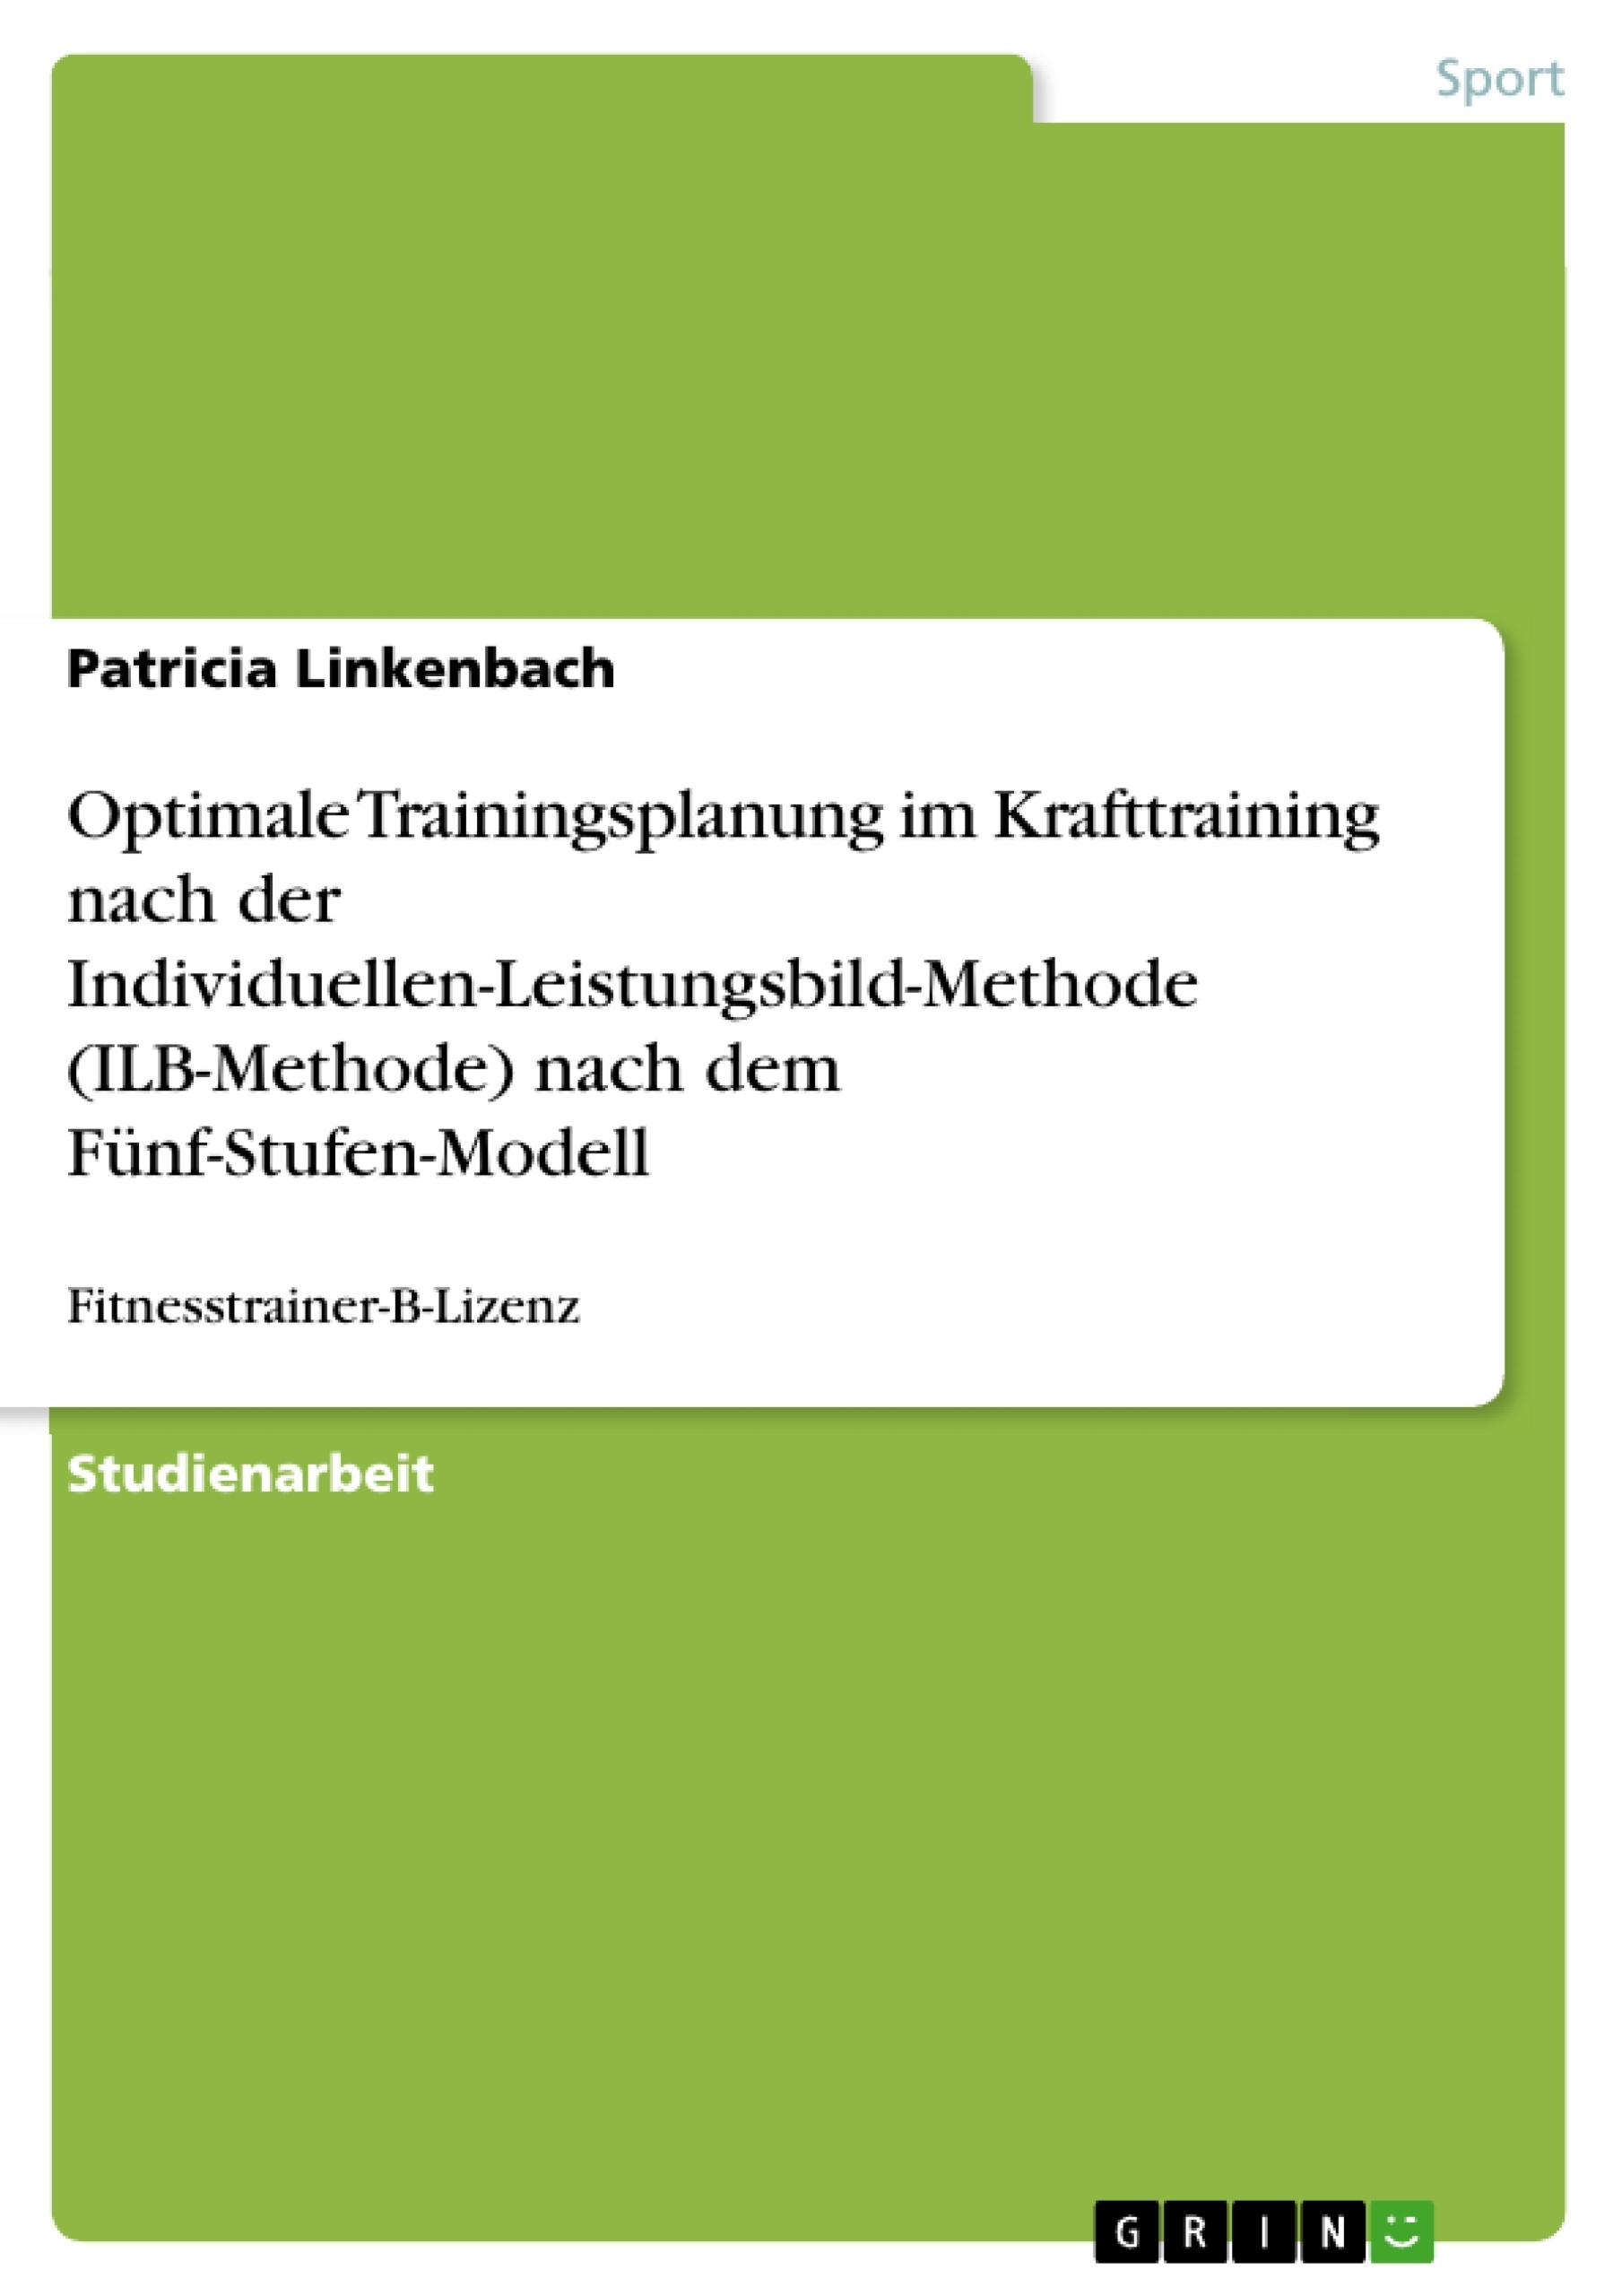 Title: Optimale Trainingsplanung im Krafttraining nach der Individuellen-Leistungsbild-Methode (ILB-Methode) nach dem Fünf-Stufen-Modell